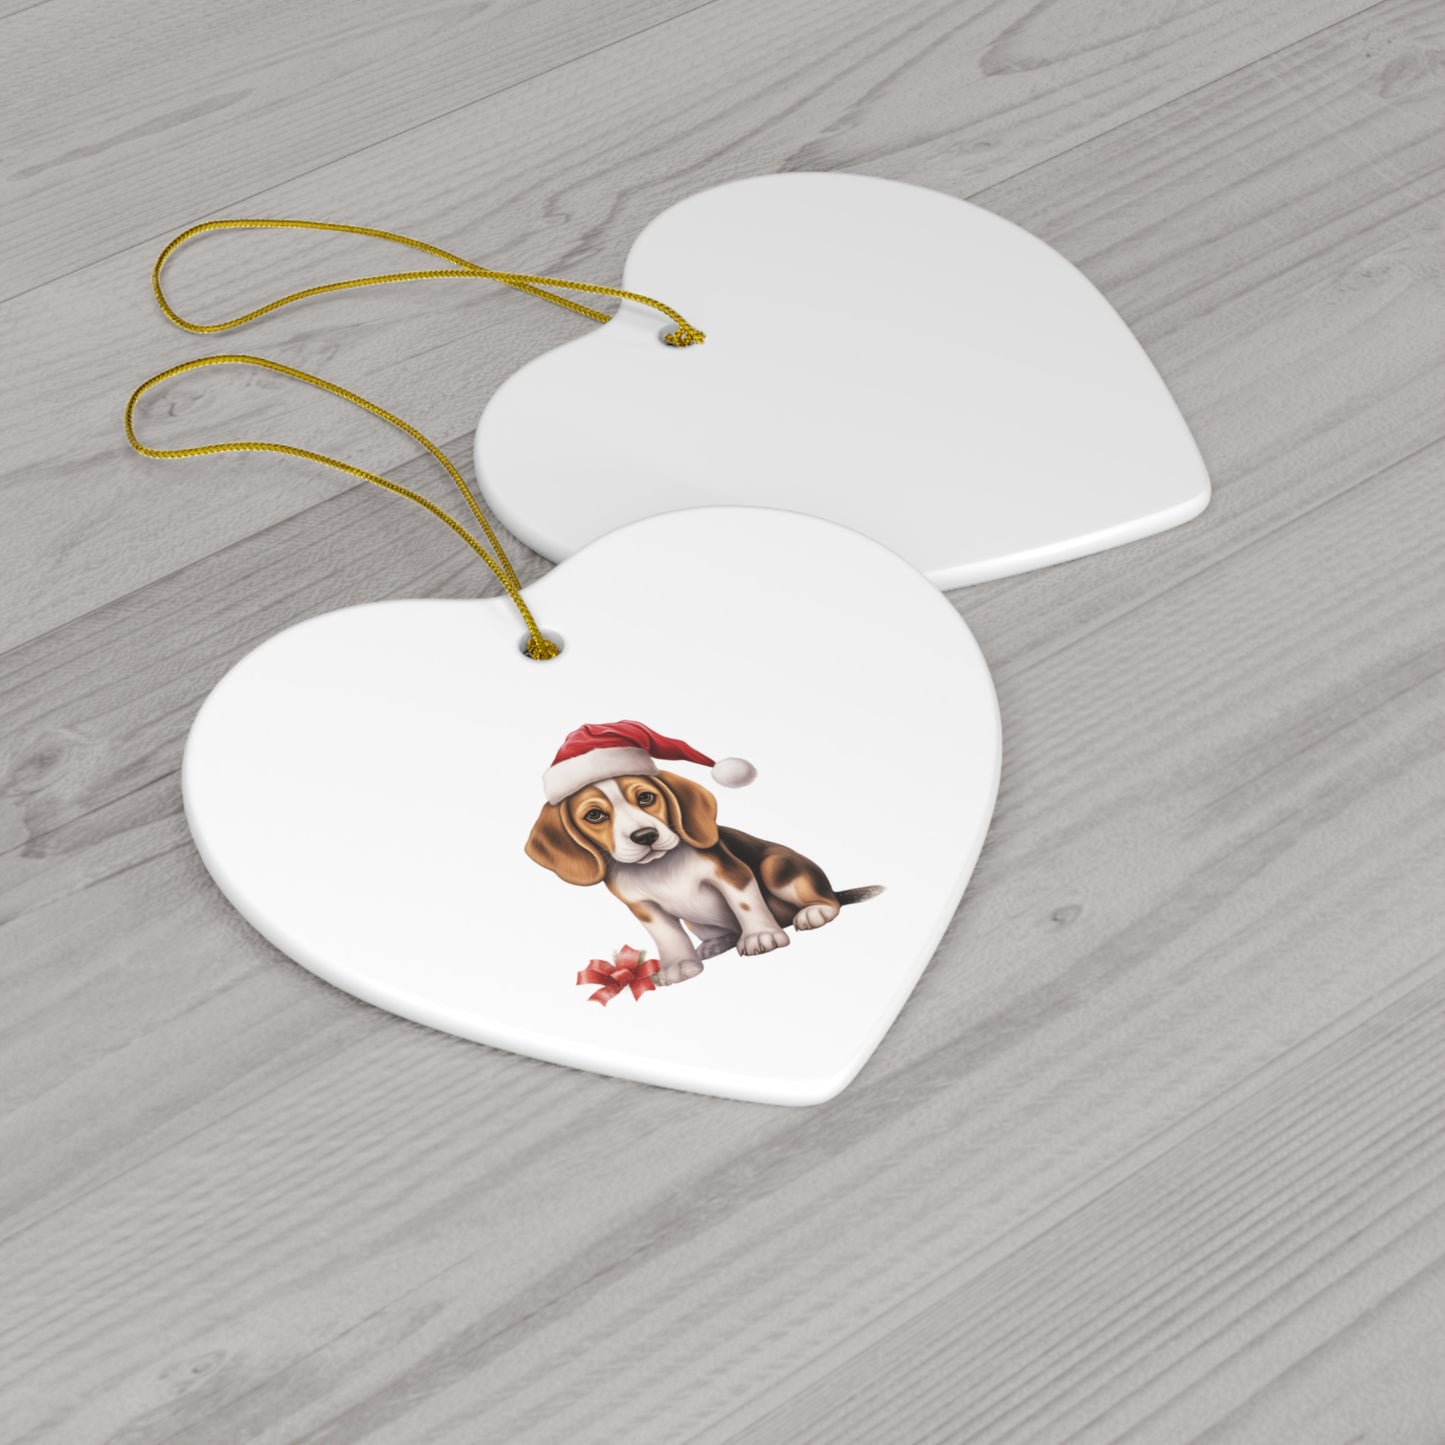 Beagle Ceramic Christmas Ornament